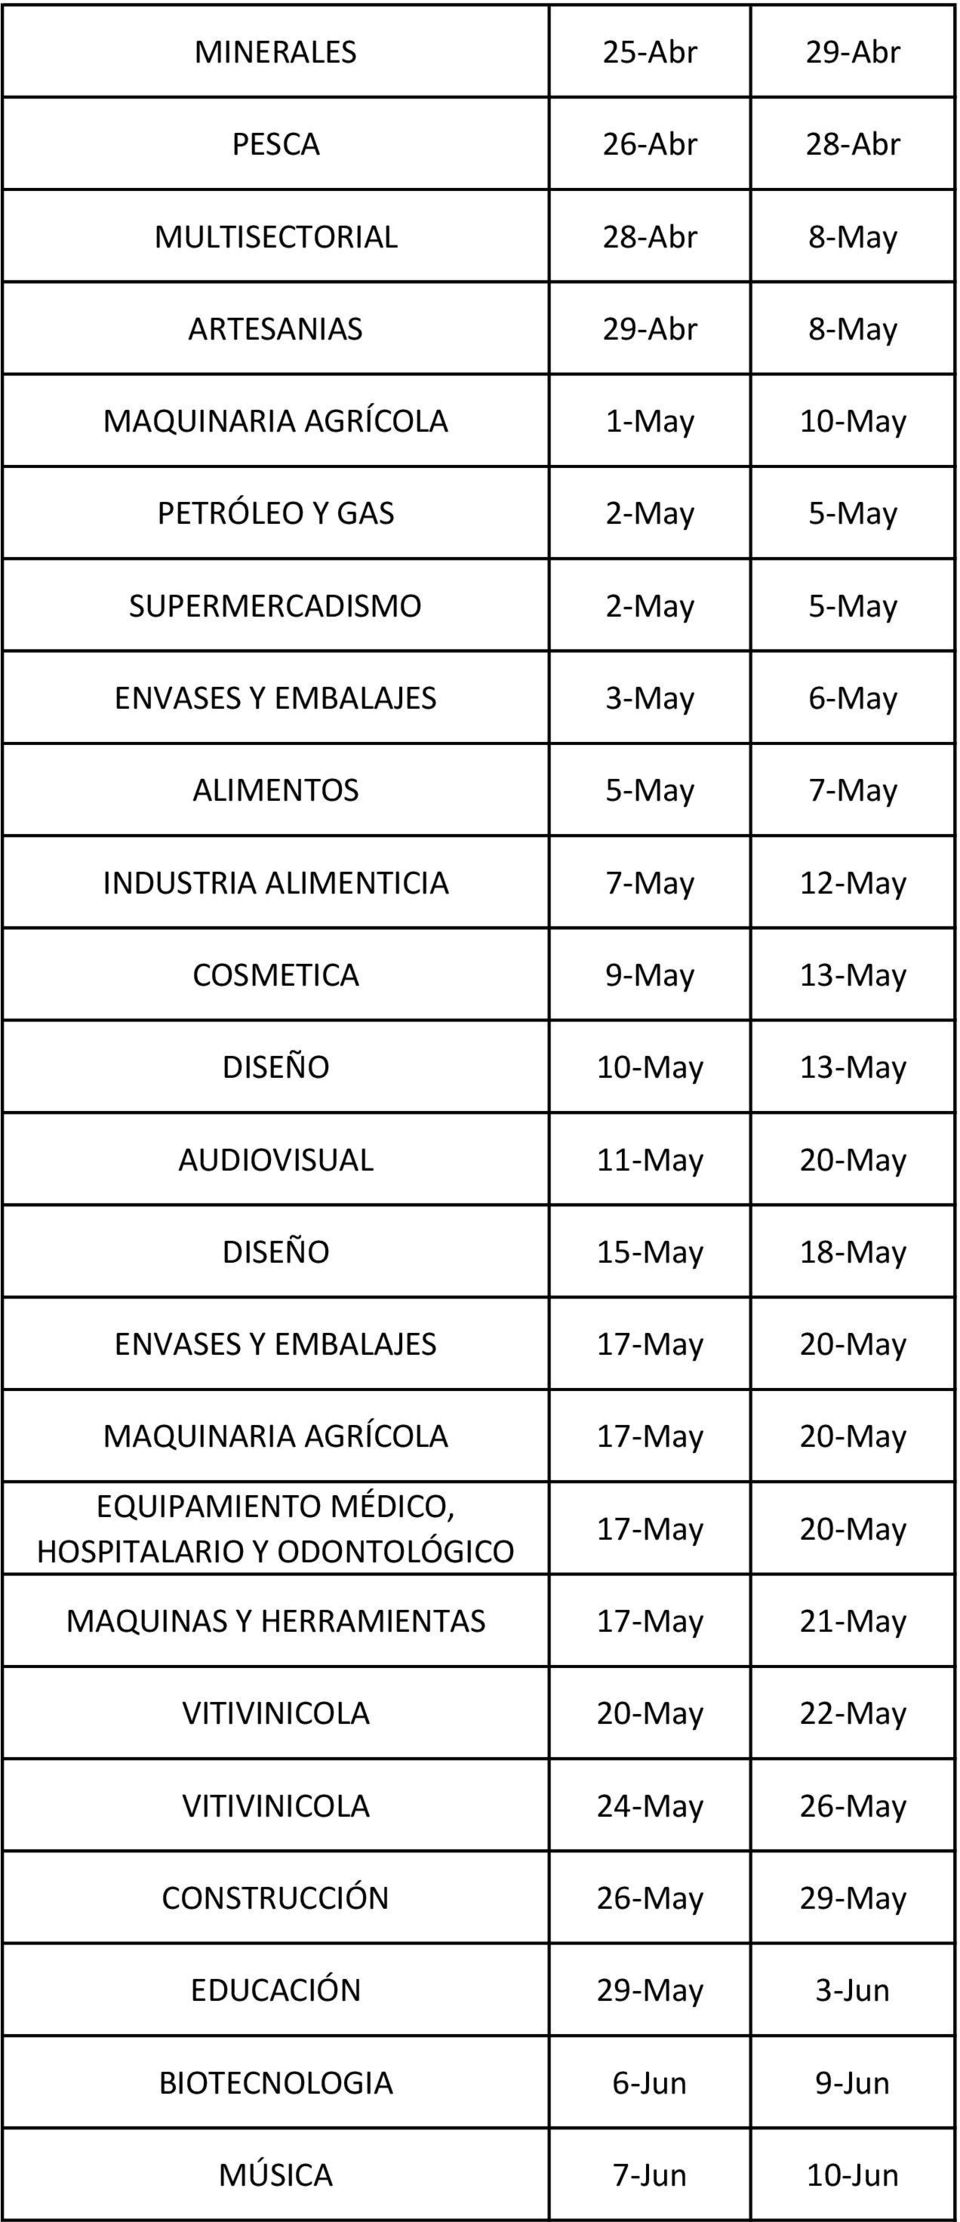 11-May 20-May DISEÑO 15-May 18-May ENVASES Y EMBALAJES 17-May 20-May MAQUINARIA AGRÍCOLA 17-May 20-May EQUIPAMIENTO MÉDICO, HOSPITALARIO Y ODONTOLÓGICO 17-May 20-May